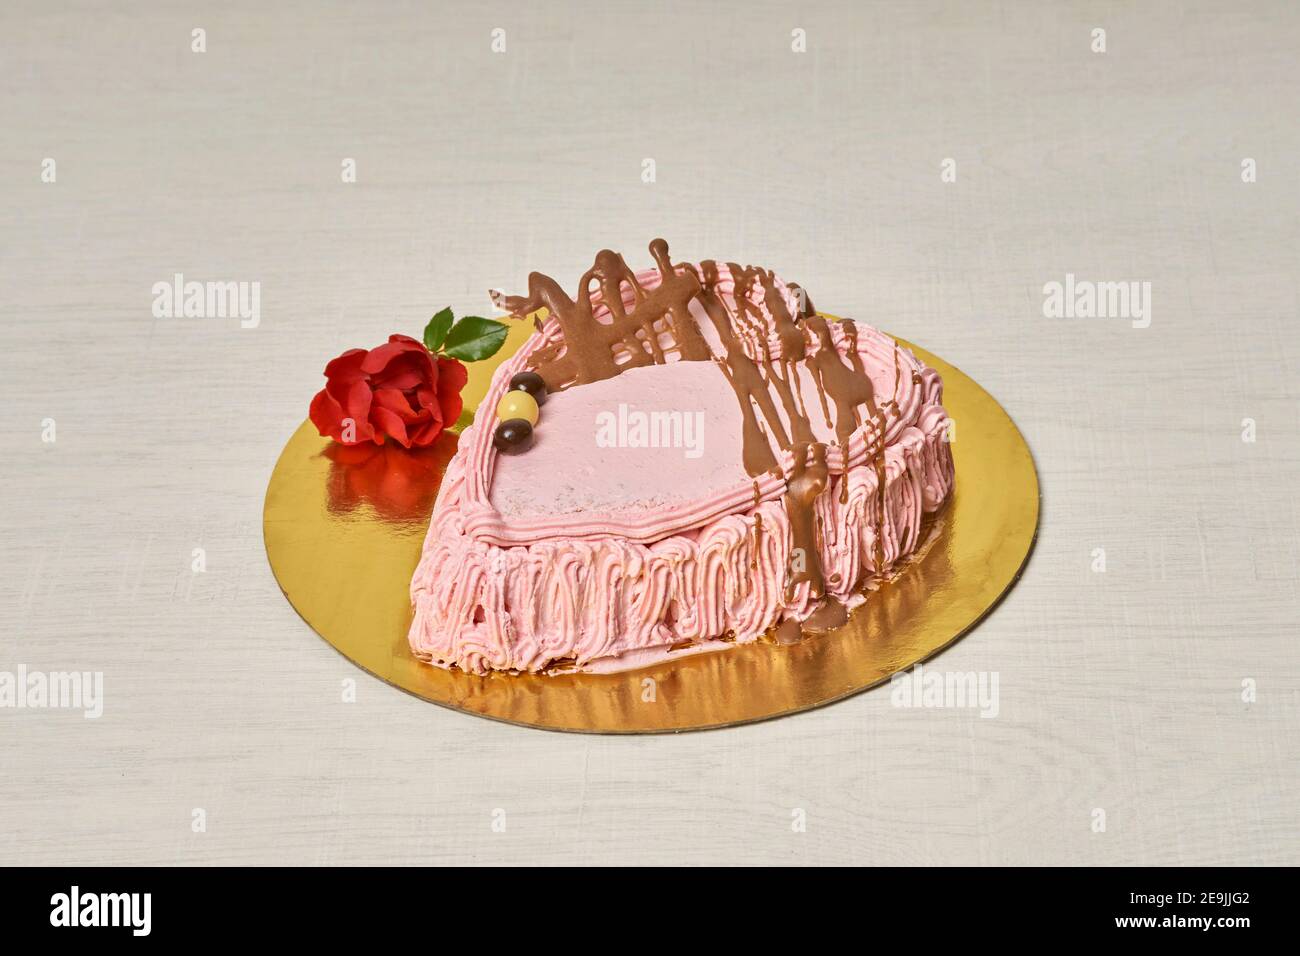 Torta di fragole e crema fatta a mano per San Valentino, a forma di cuore e su base dorata Foto Stock